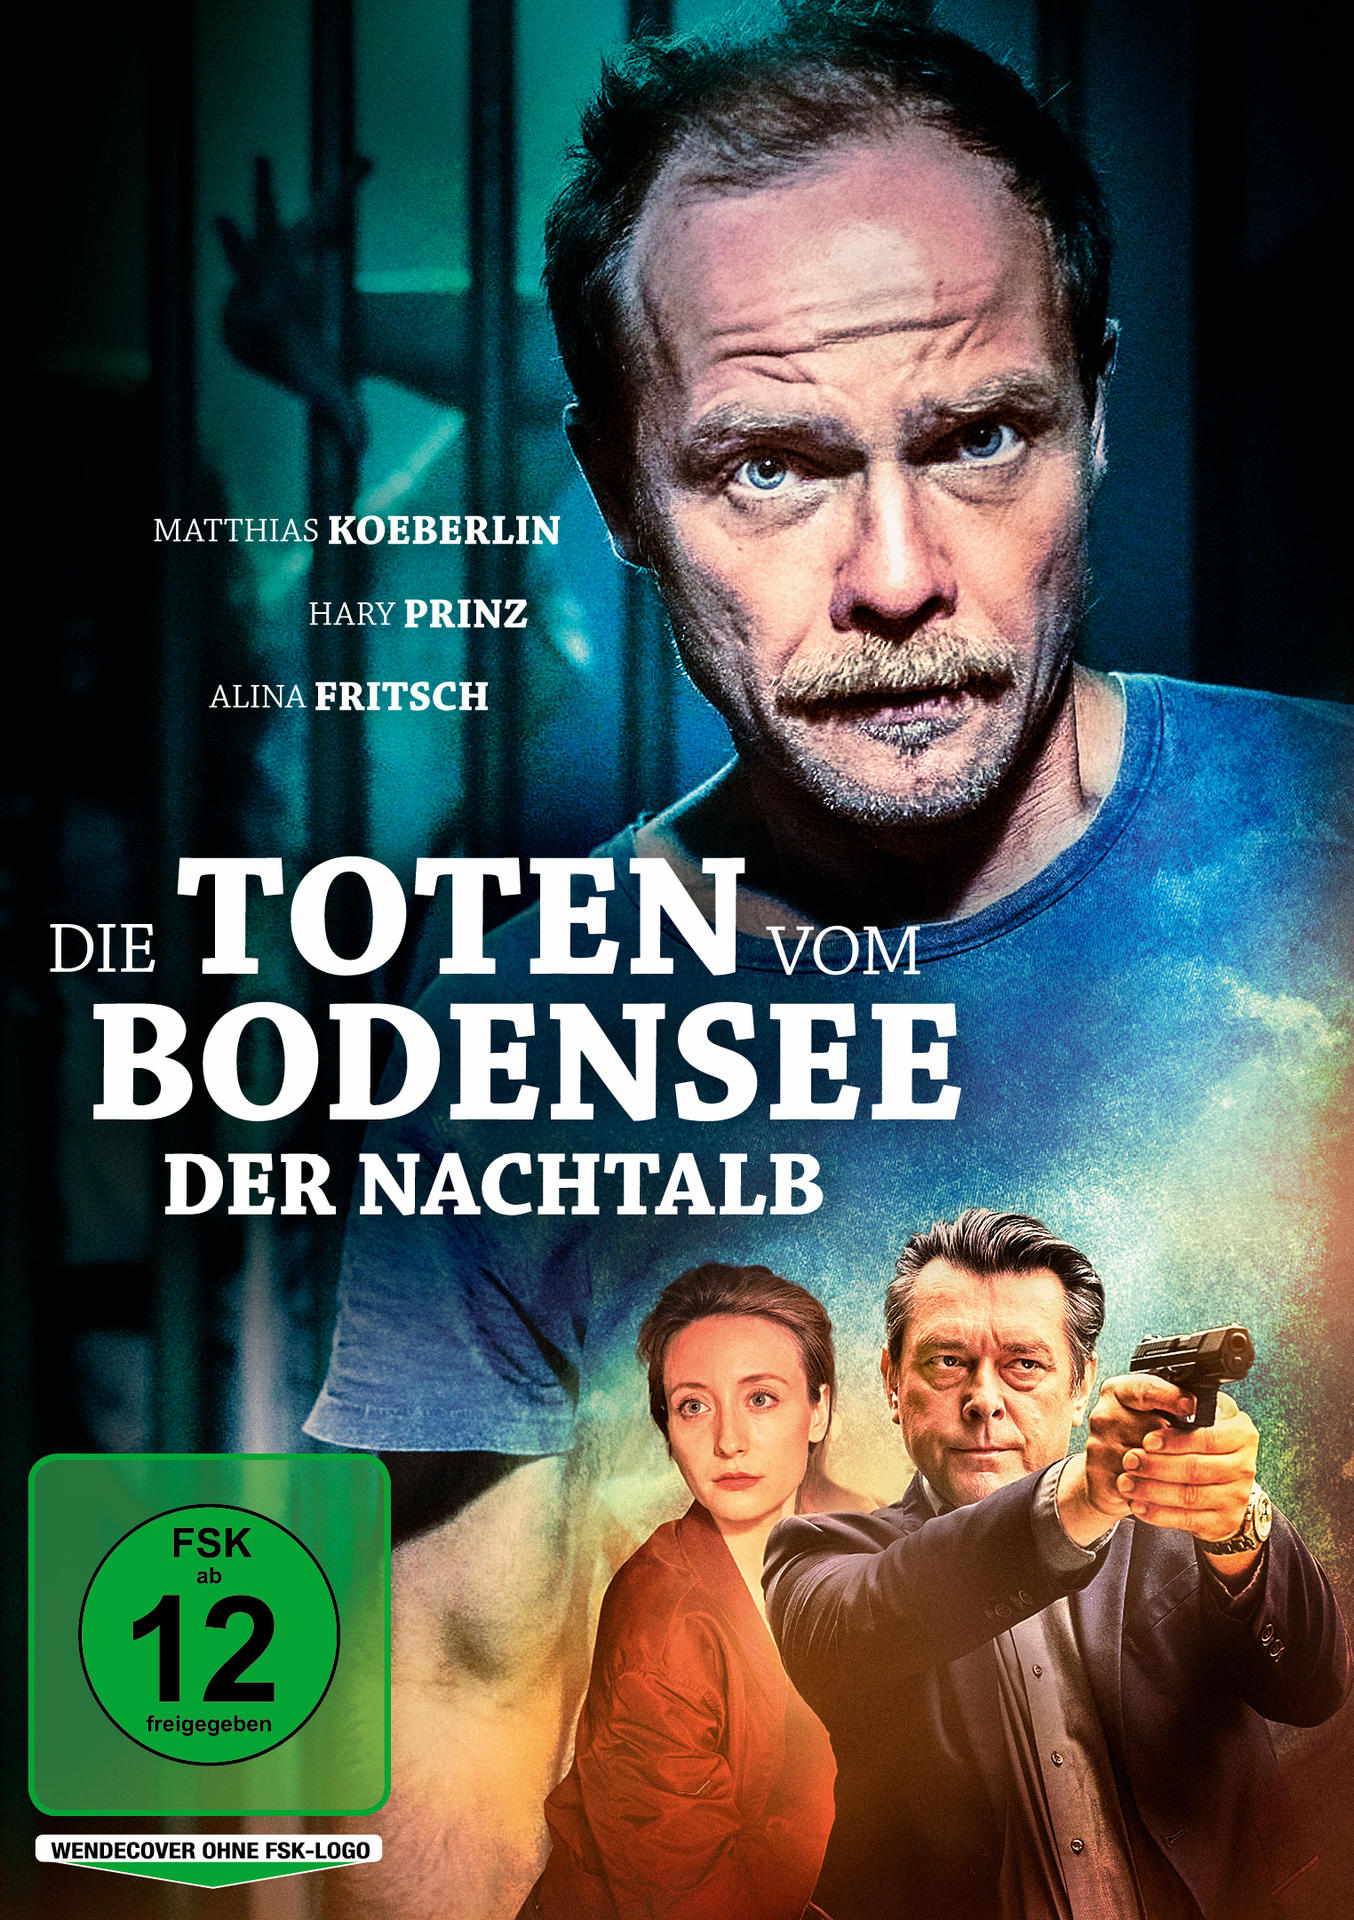 Der Bodensee: vom Toten DVD Nachtalb Die